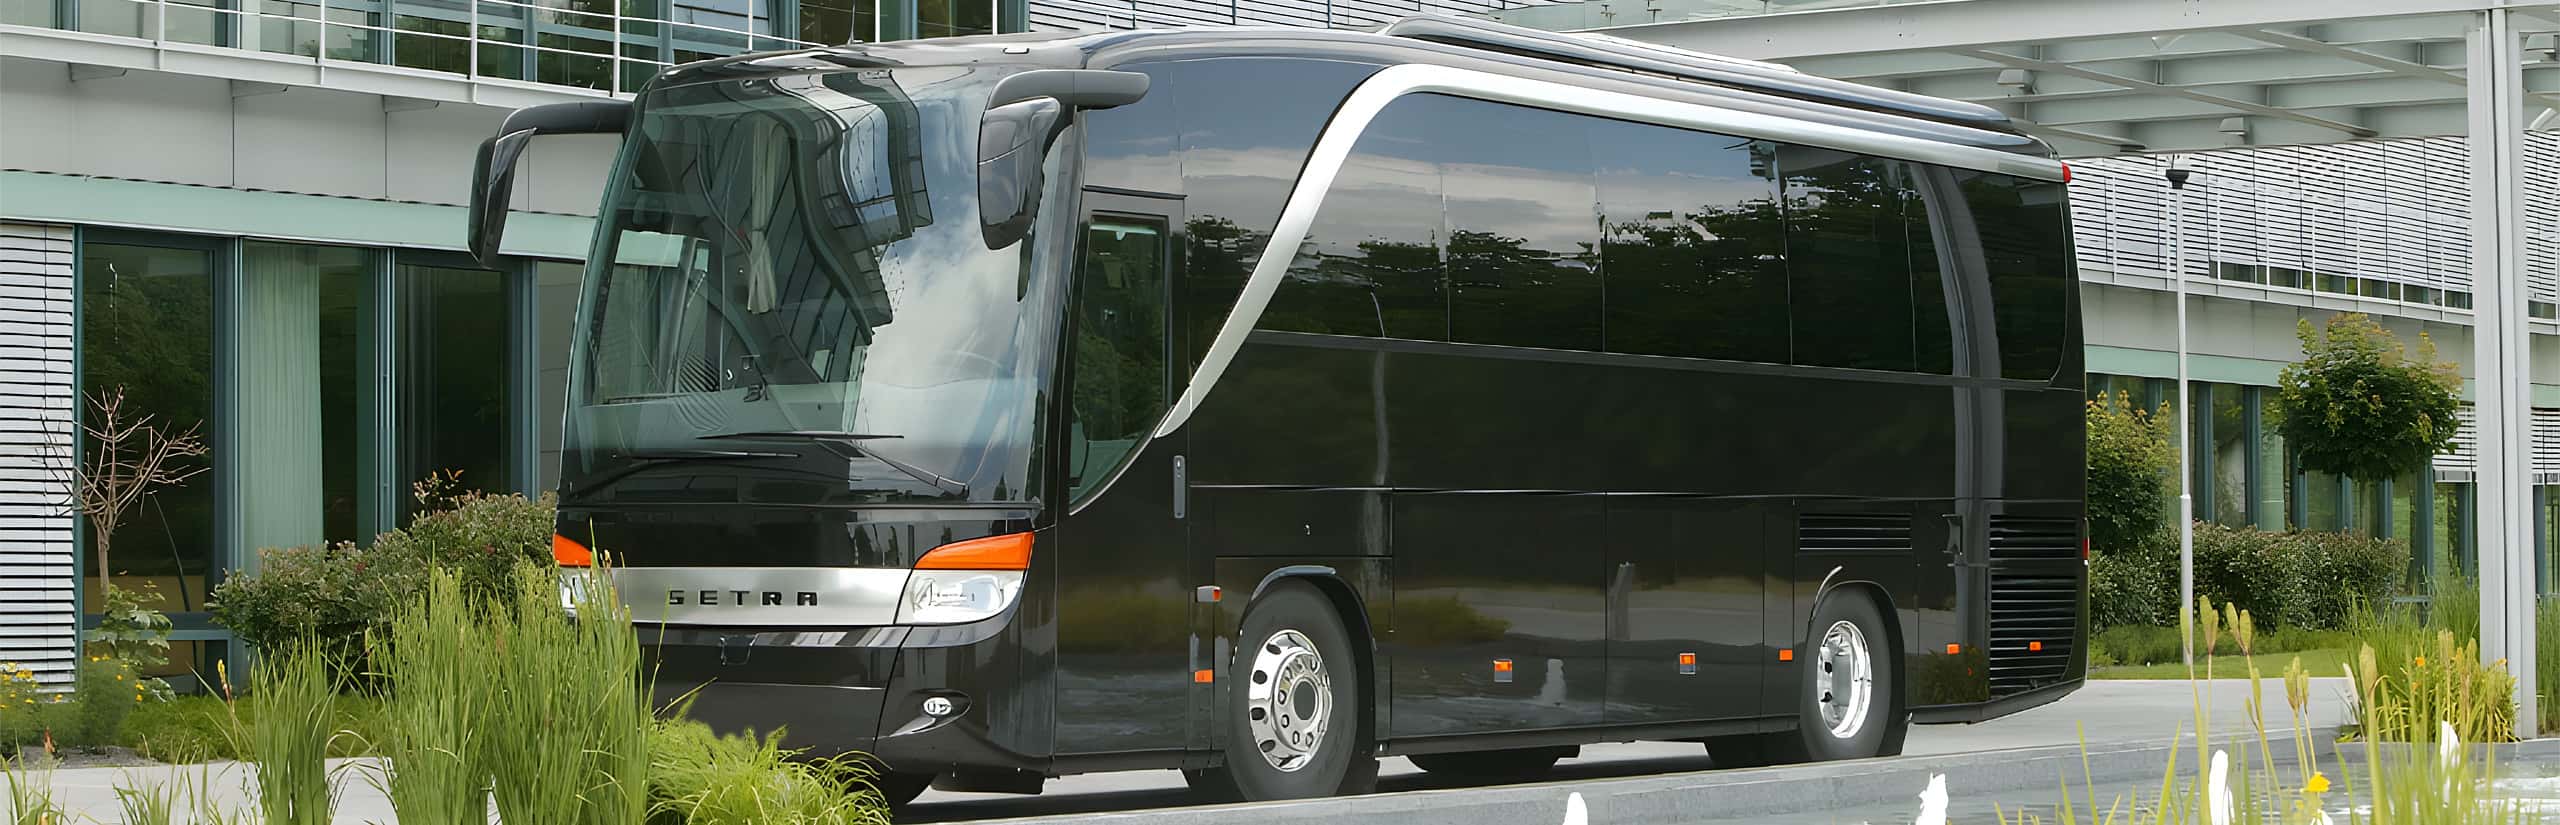 Vipbus – Luxury bus – Vipliner – Conference bus hire in Frankfurt